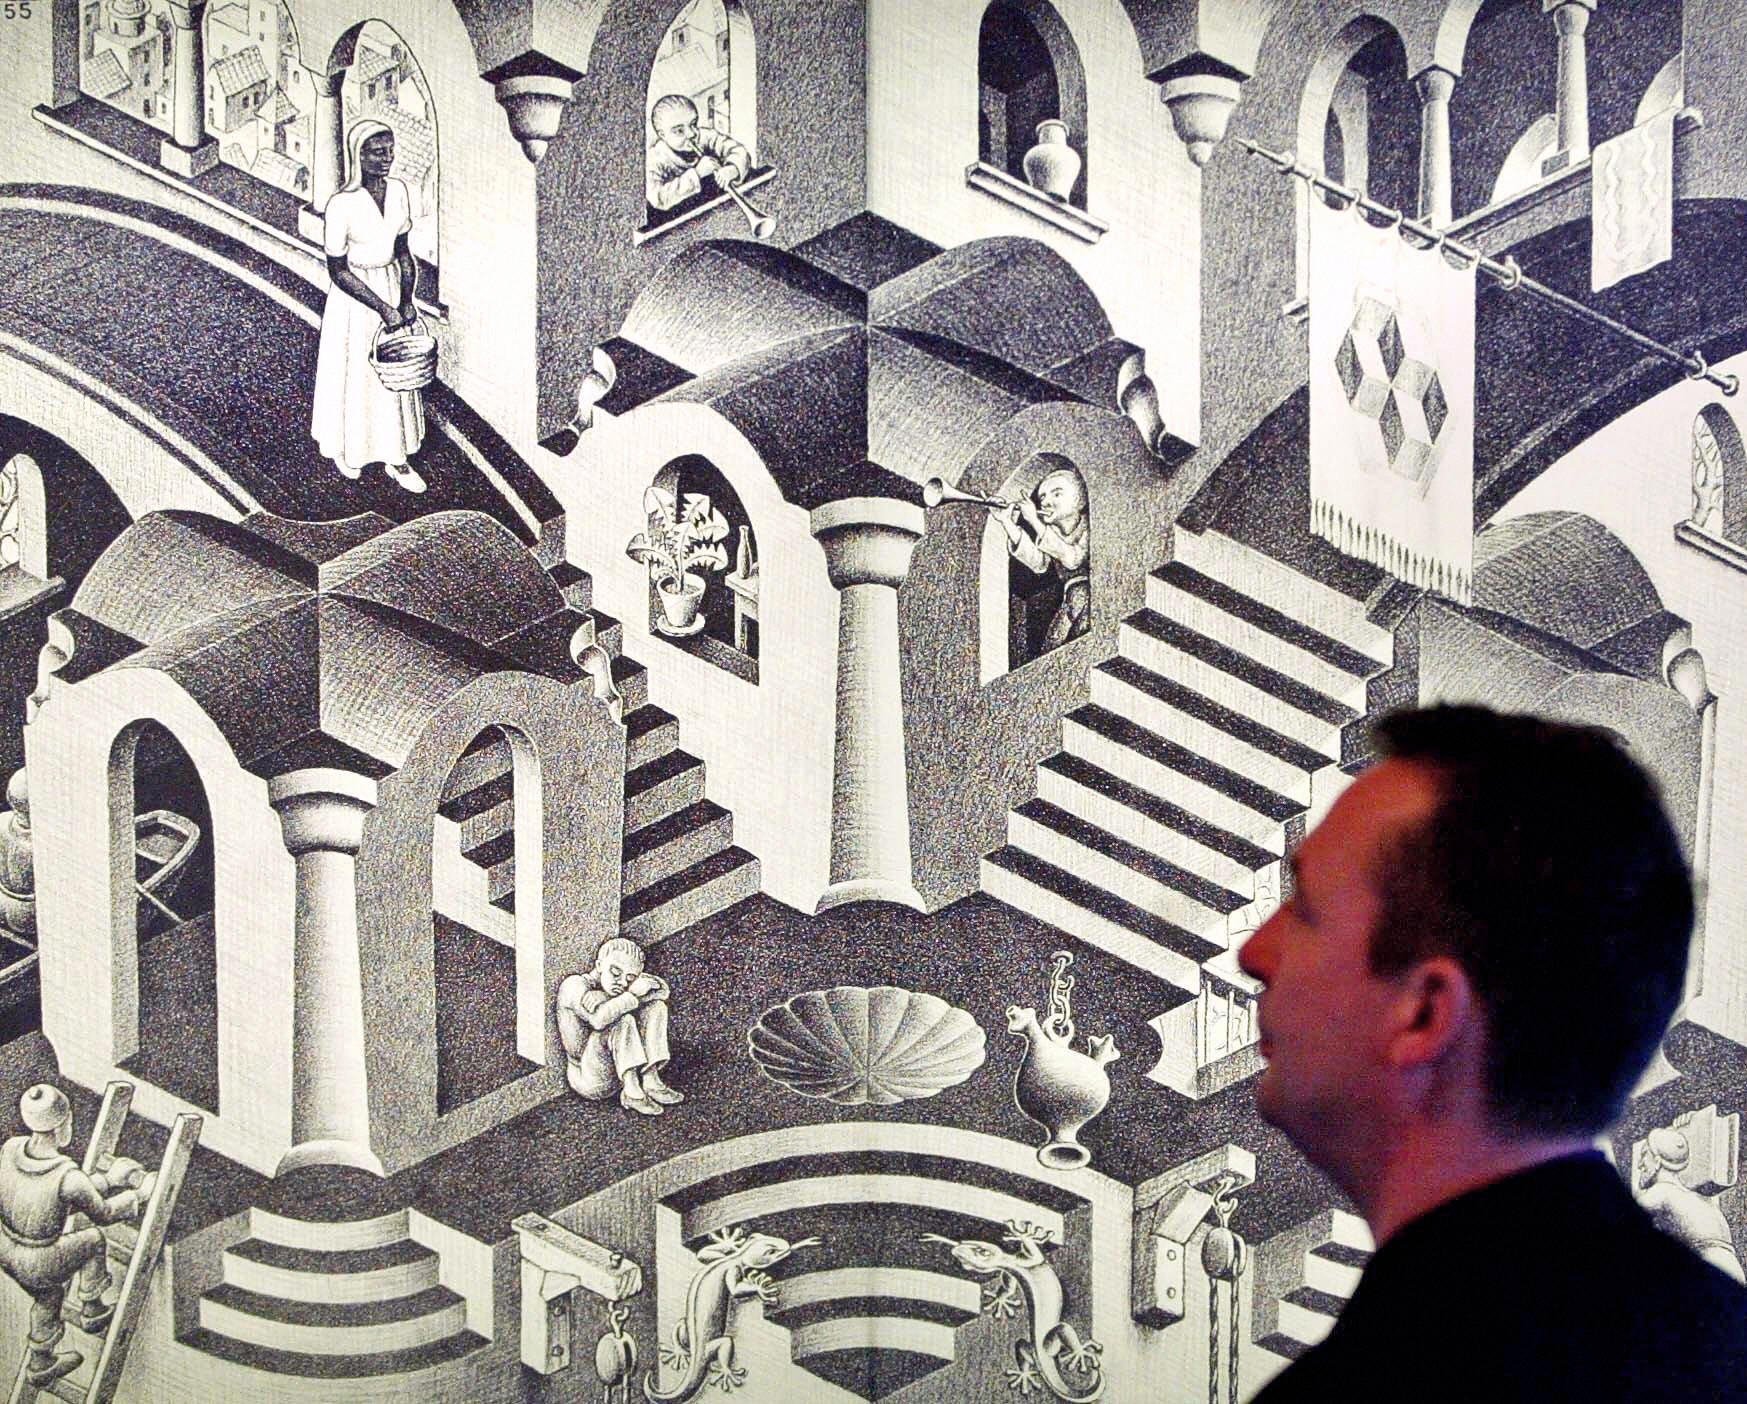 obra de M.C. Escher